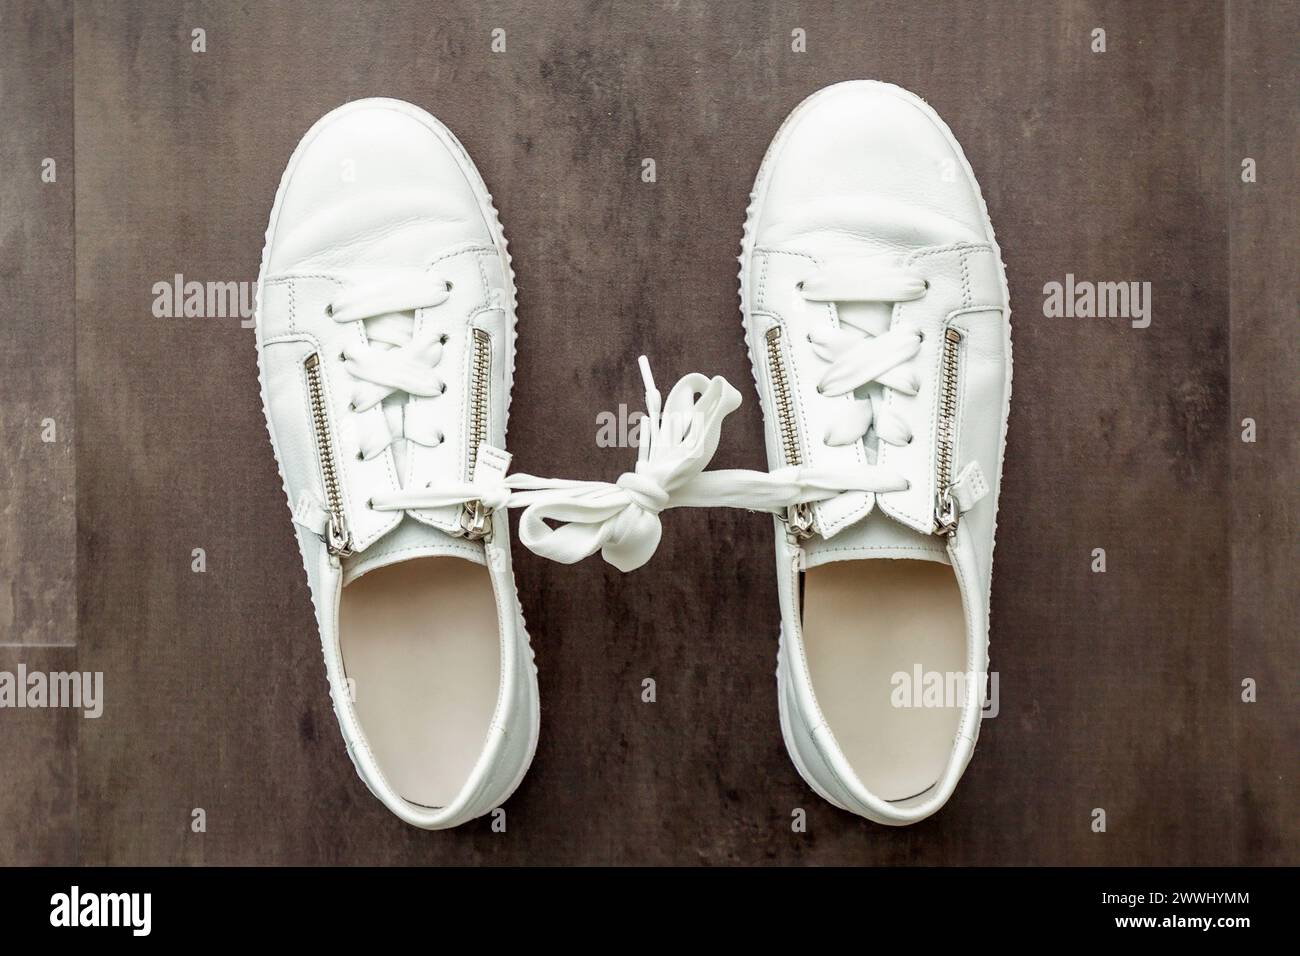 Gamophobie. Angst vor dem Engagement. Ein Paar weiße Schuhe, Sneaker auf hölzernem Hintergrund. Gamophobie. Angst vor Co-Gamophobie. Furcht vor engagierten Menschen Stockfoto